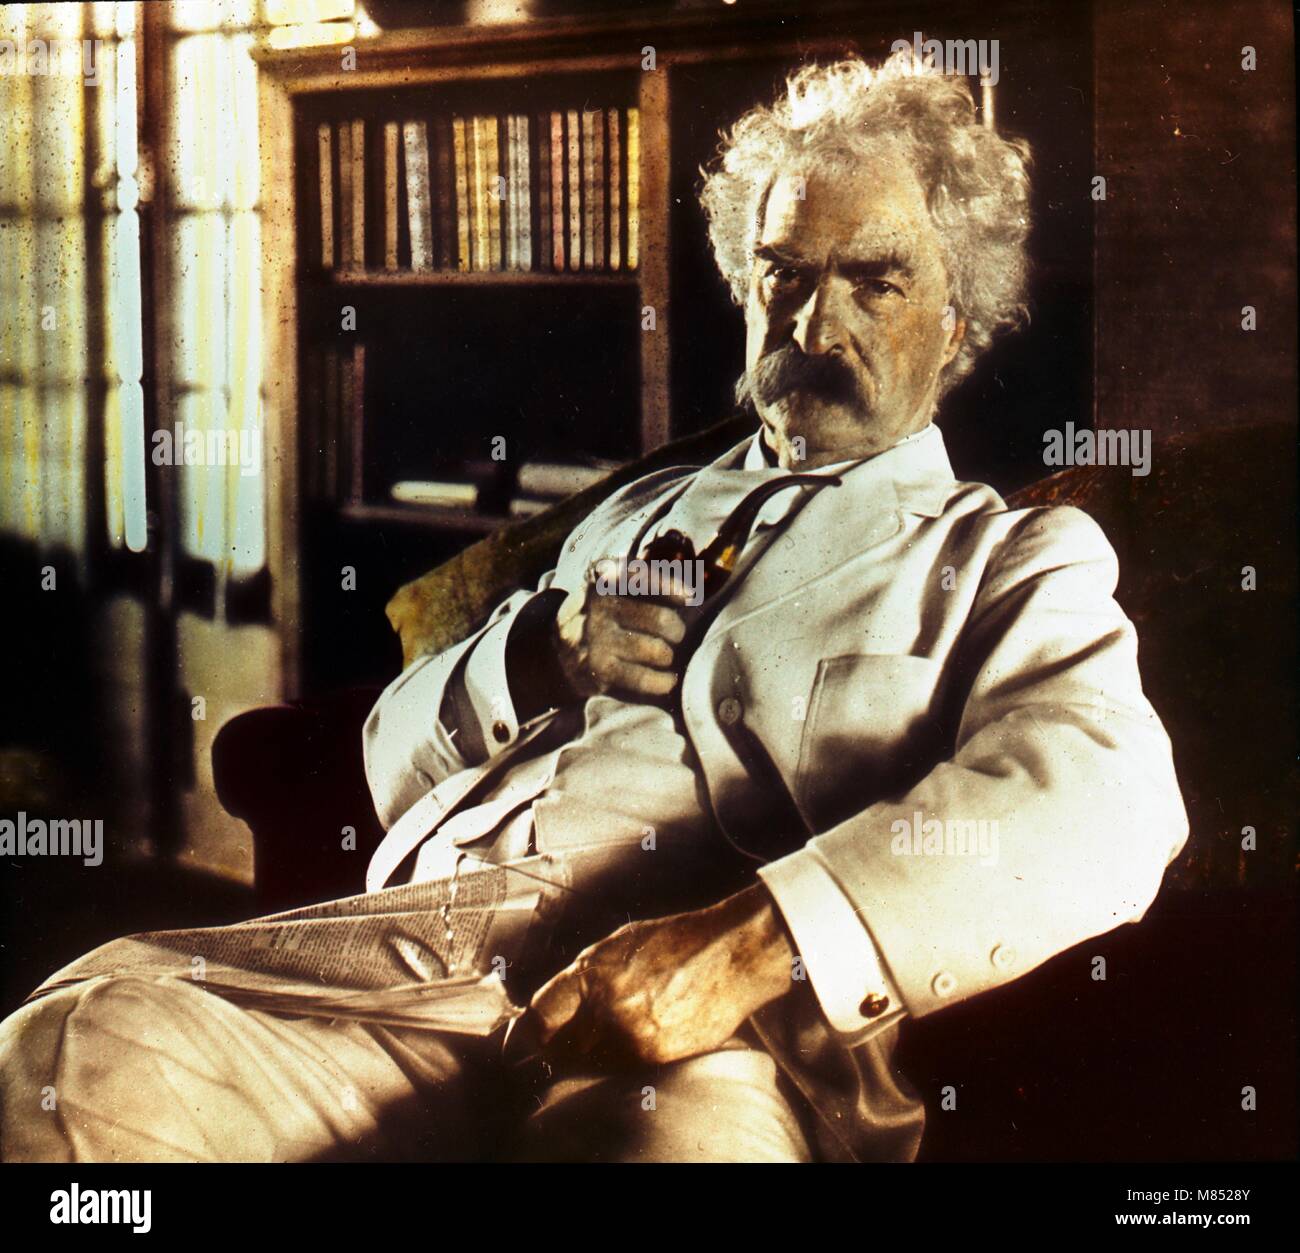 Portrait colorisé de l'auteur américain et humoriste Mark Twain, né Samuel Langhorne Clemens (1835 - 1910) tenant un tuyau et des verres, avec un journal sur ses genoux, vers 1900. (Photo de Burton Holmes) Banque D'Images